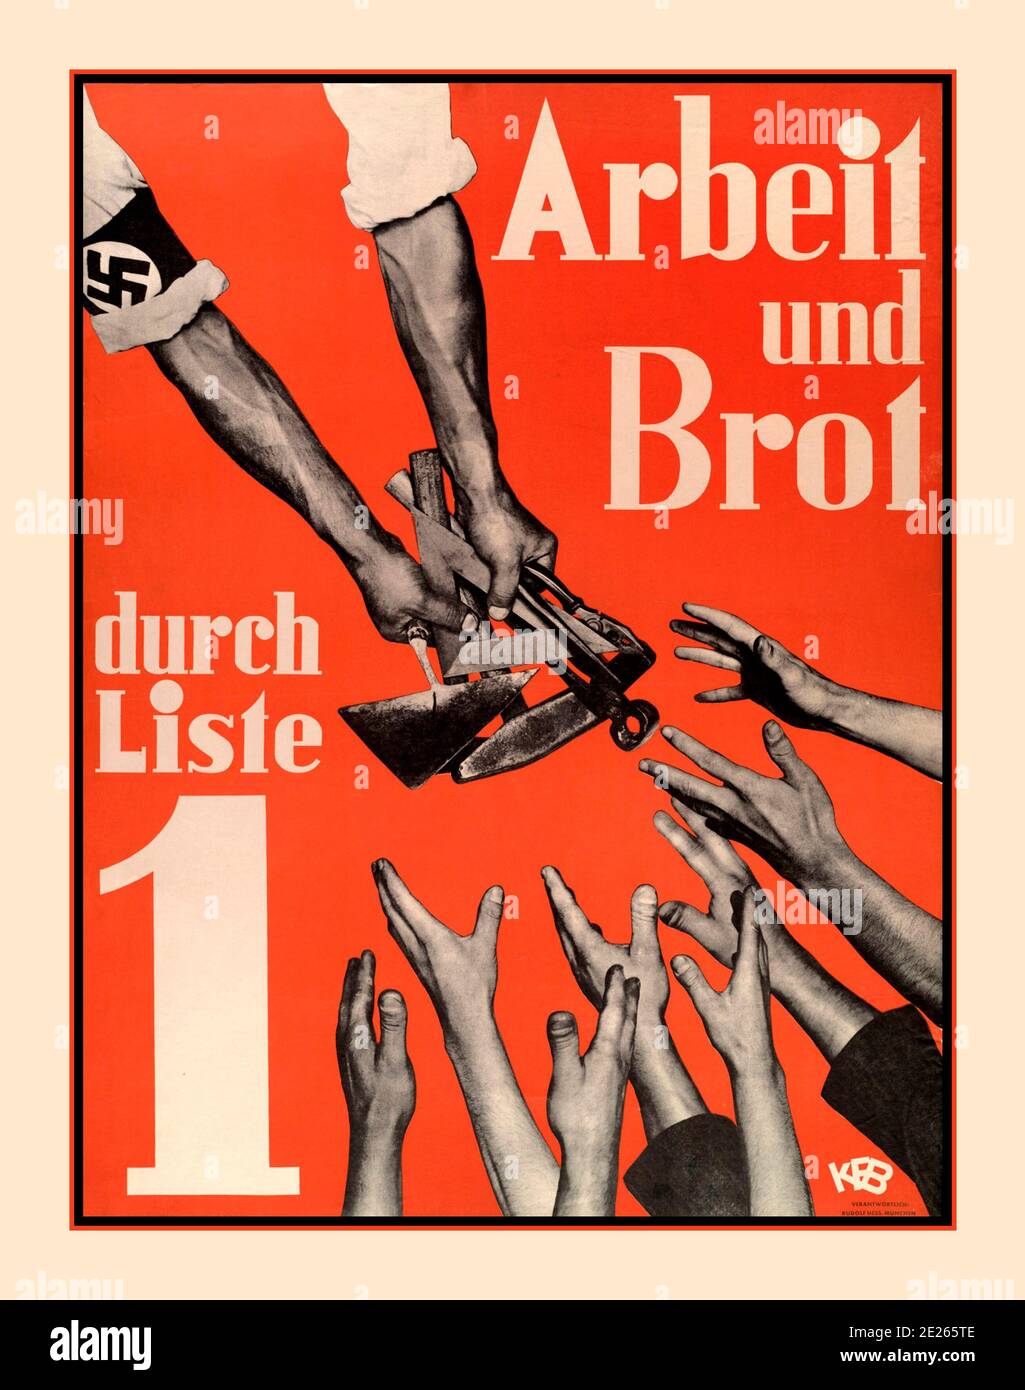 1930 der deutschen Wahl Hitler Propaganda Poster ARBEIT und Brot durch Liste 1 Adolf Hitler politisches Poster 1930 Wahlplakat. Hände, die Werkzeuge zum Arbeiten anbieten, mit Hakenkreuz-Emblem auf der Hülle, mit verzweifelten Händen, die nach oben reichen. Stockfoto